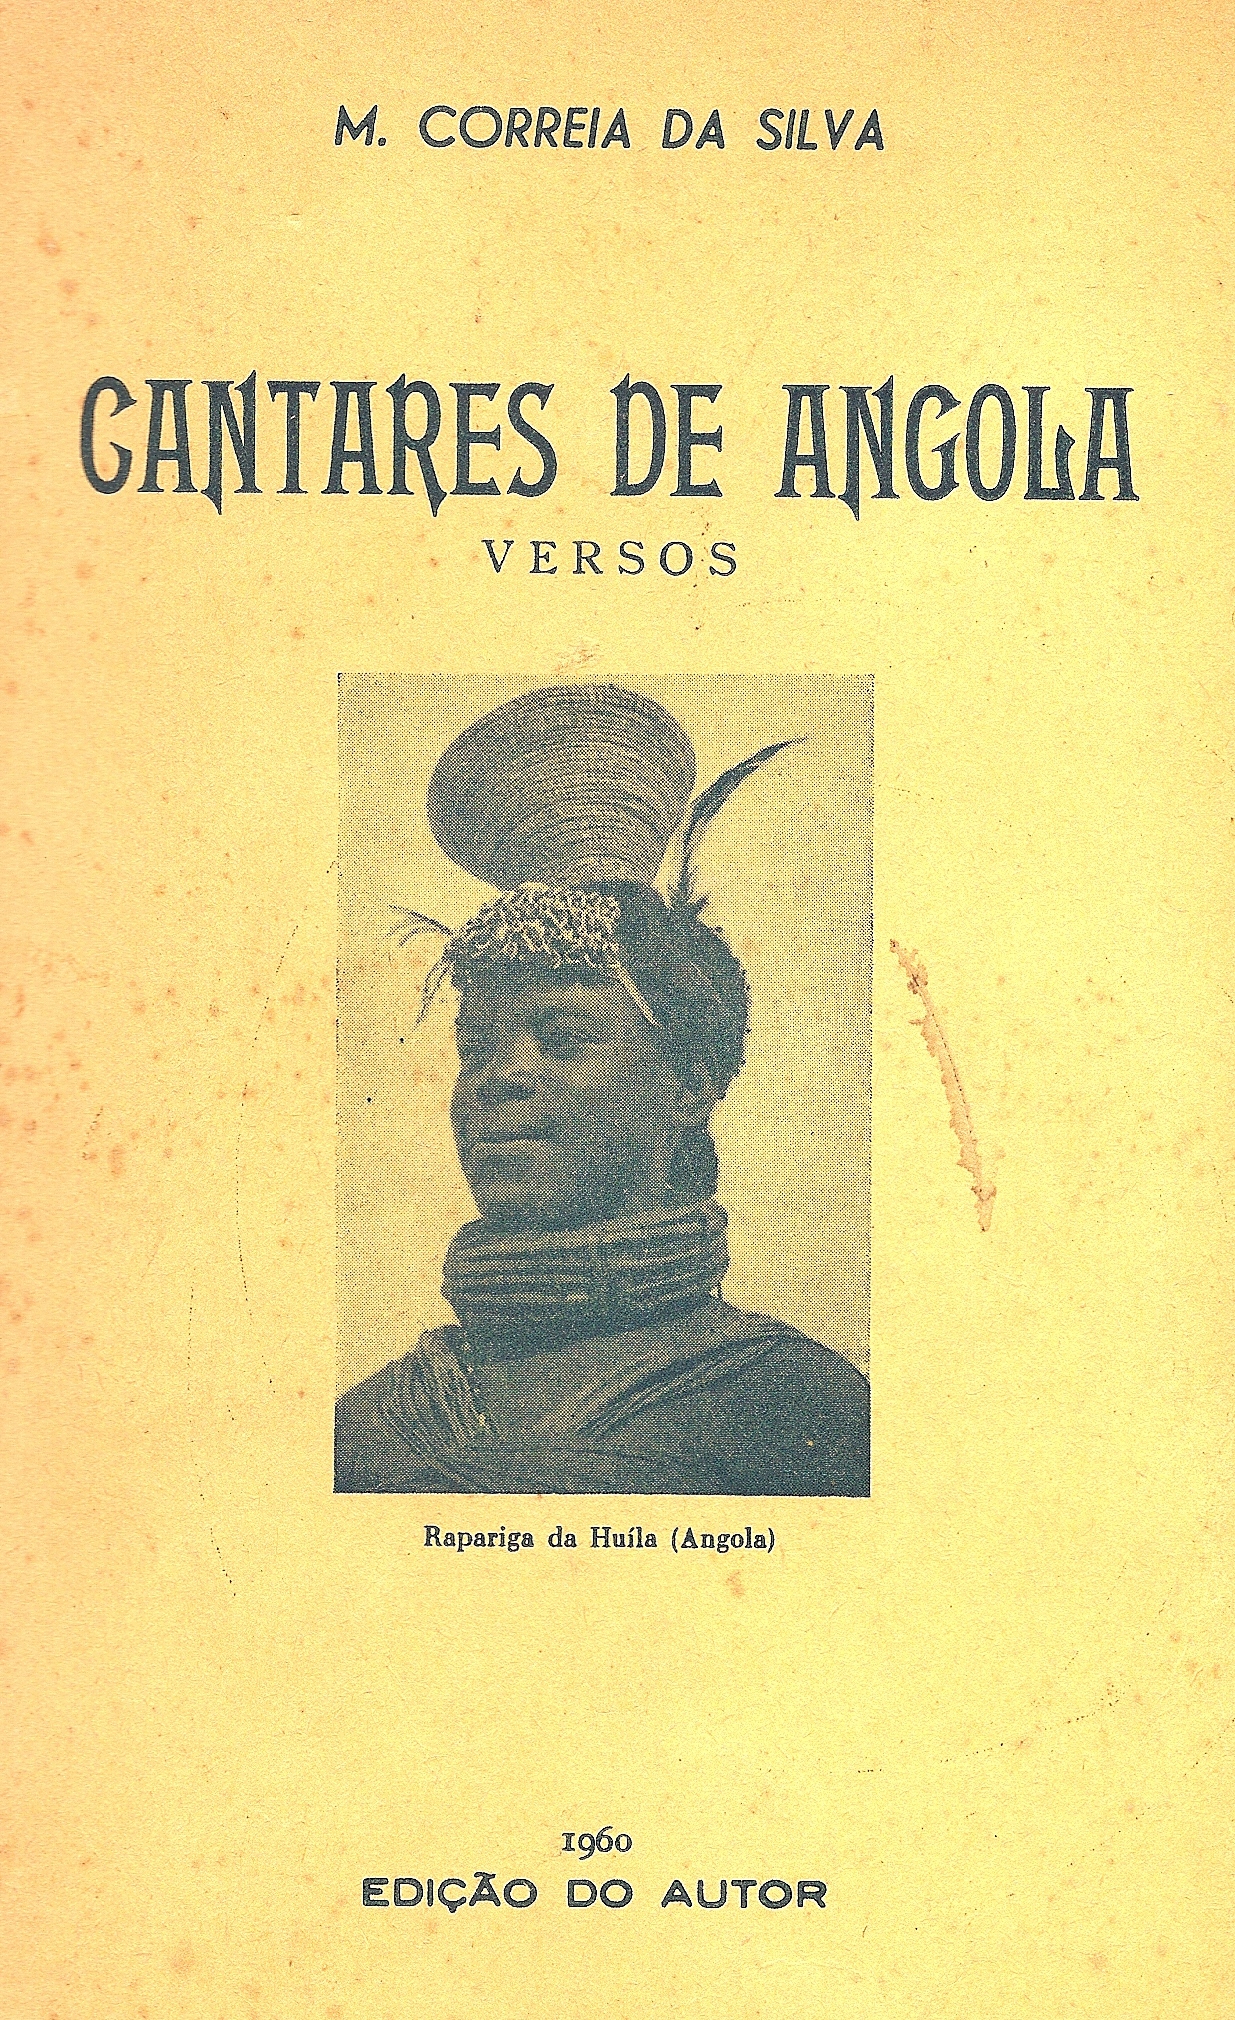 Cantares de Angola capa1